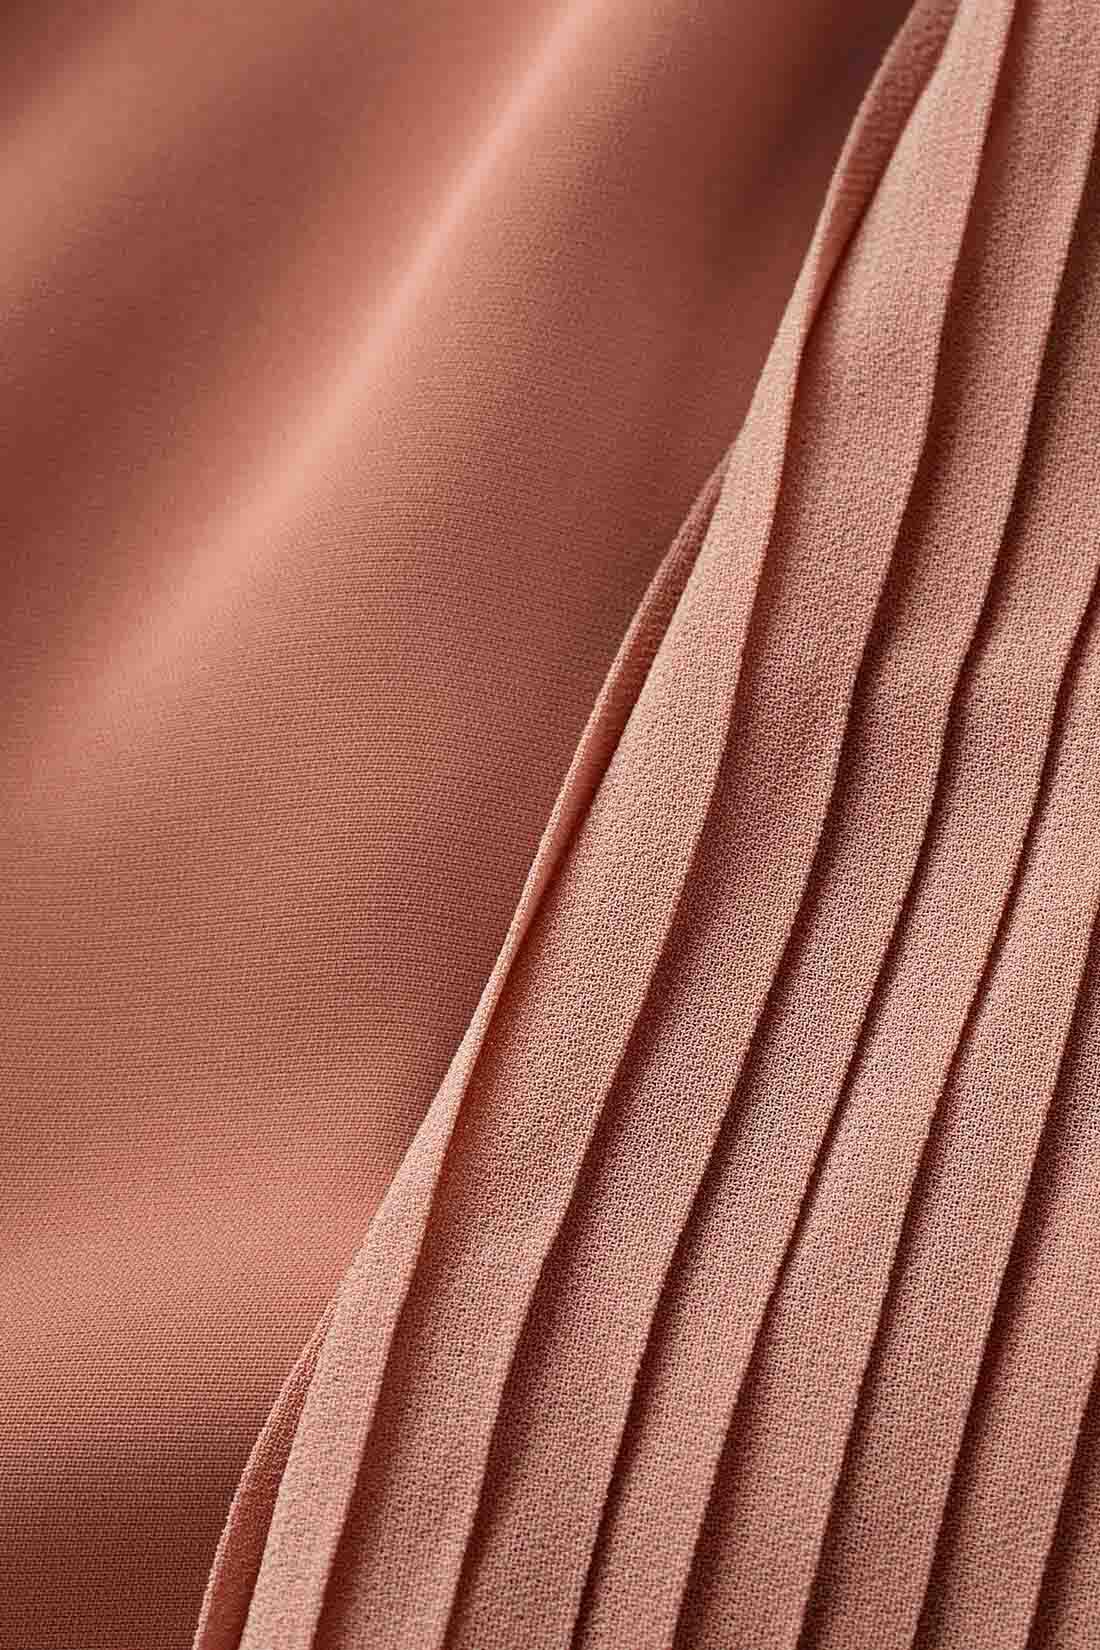 IEDIT[イディット]　袖プリーツが繊細なボウタイデザインブラウス〈ネイビー〉|マットなポリエステル素材とシフォンプリーツの軽やかな薄手素材の組み合わせ。 ※お届けするカラーとは異なります。